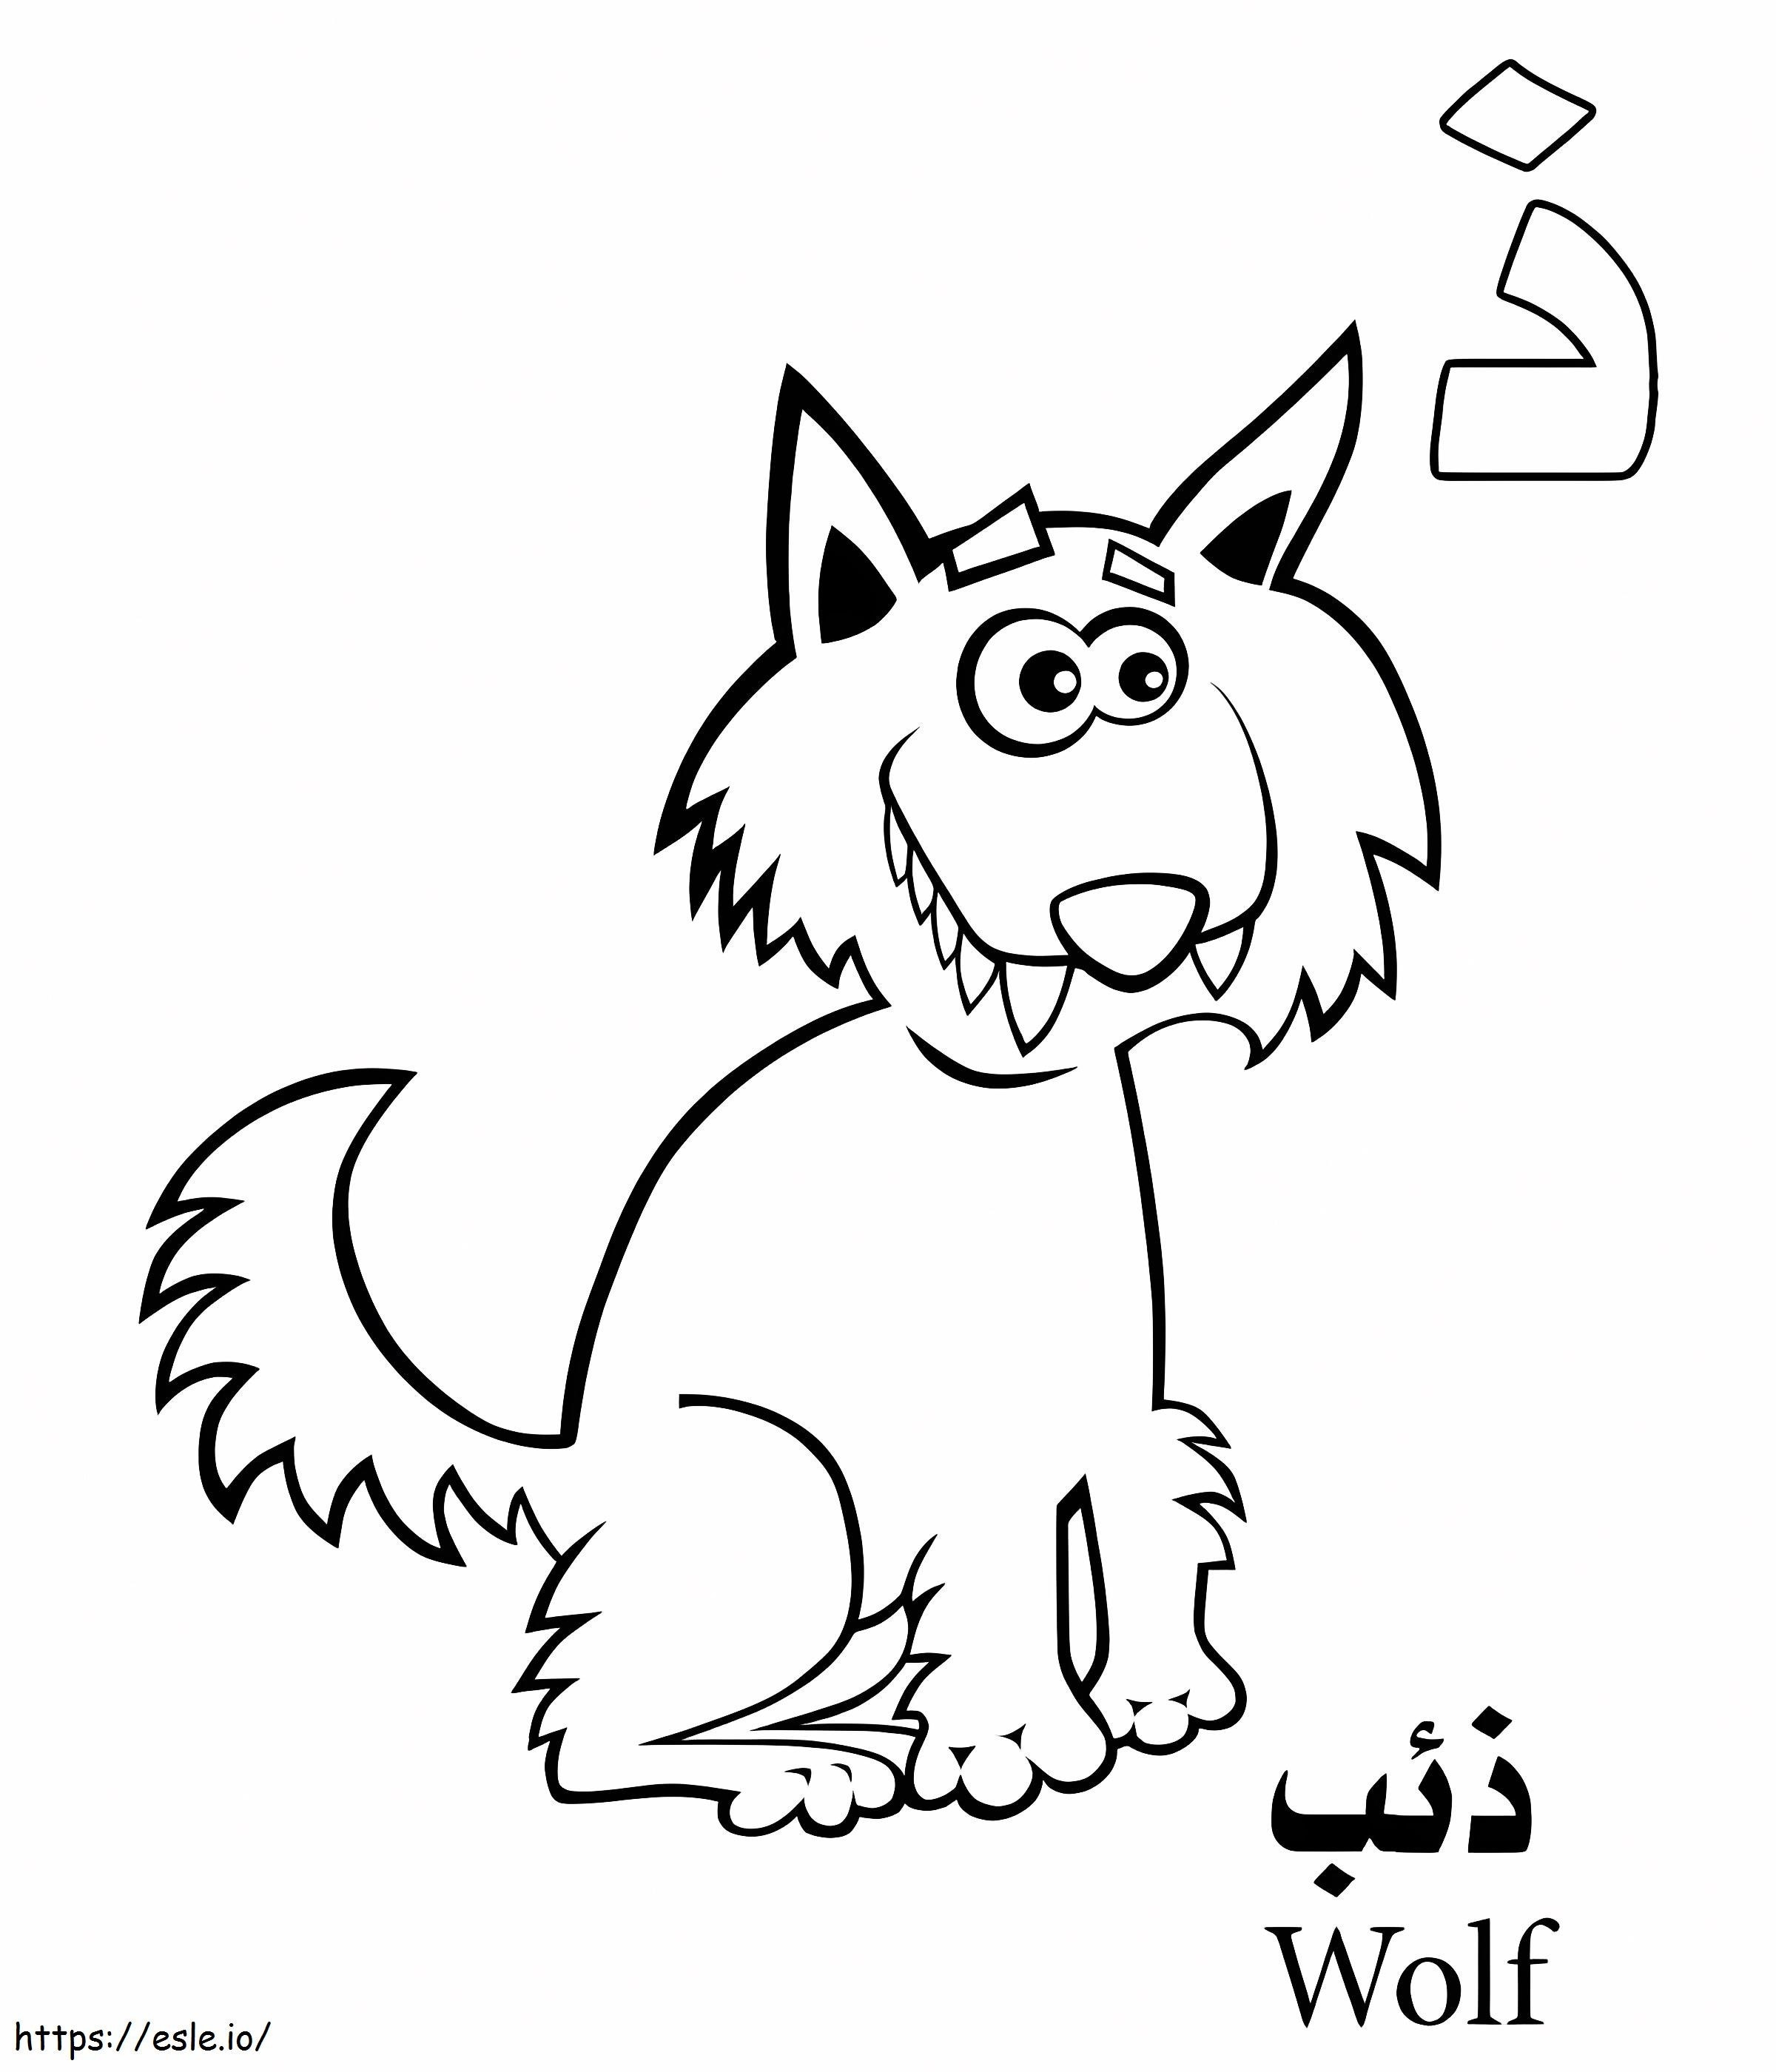 Arabisches Wolf-Alphabet ausmalbilder